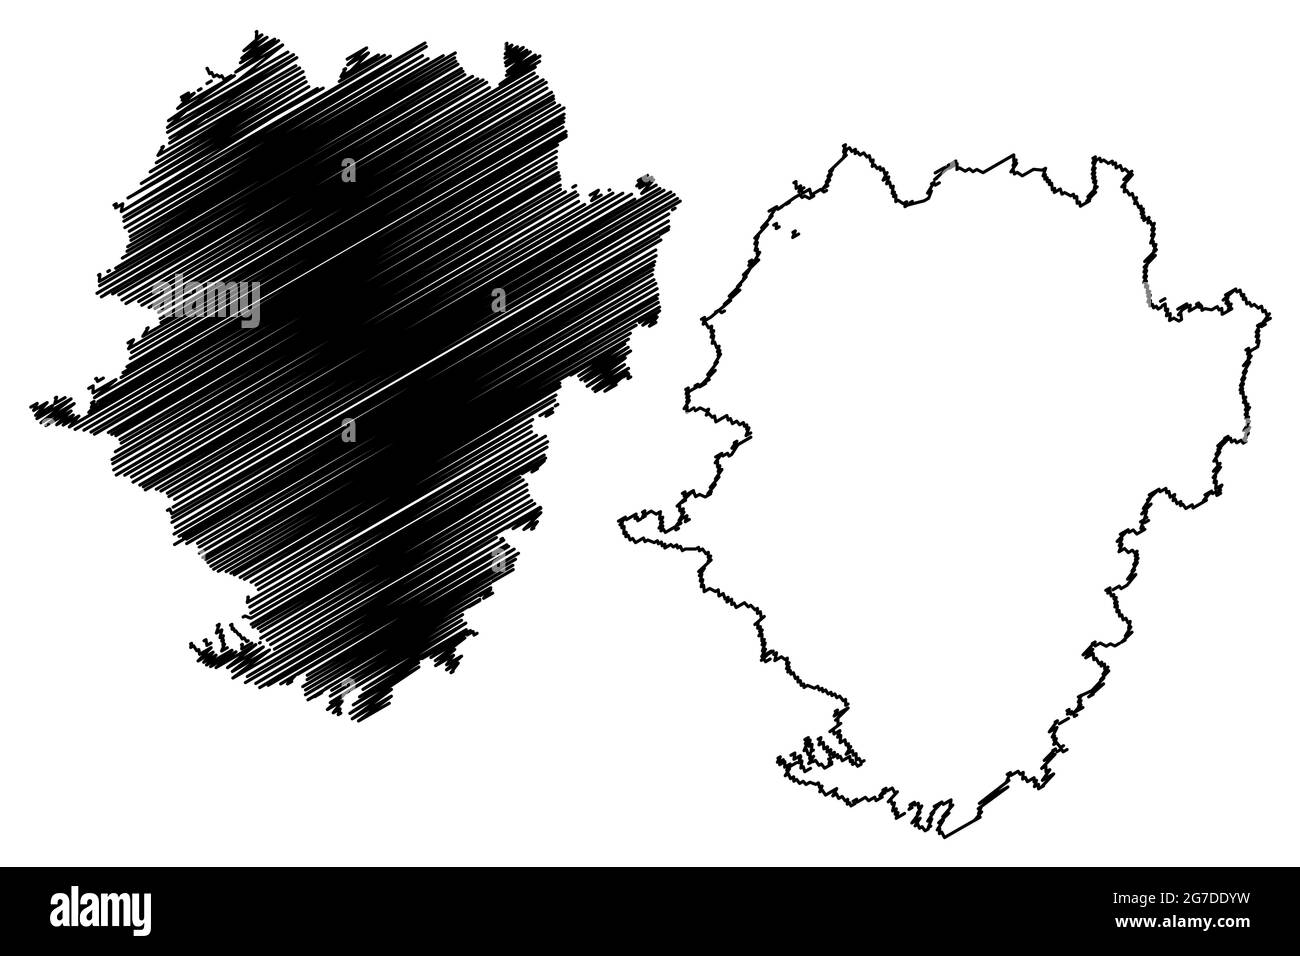 Landkreis Hassberge (Bundesrepublik Deutschland, Landkreis Unterfranken, Freistaat Bayern) Kartenvektordarstellung, Scribble-Skizze Hasbe Stock Vektor